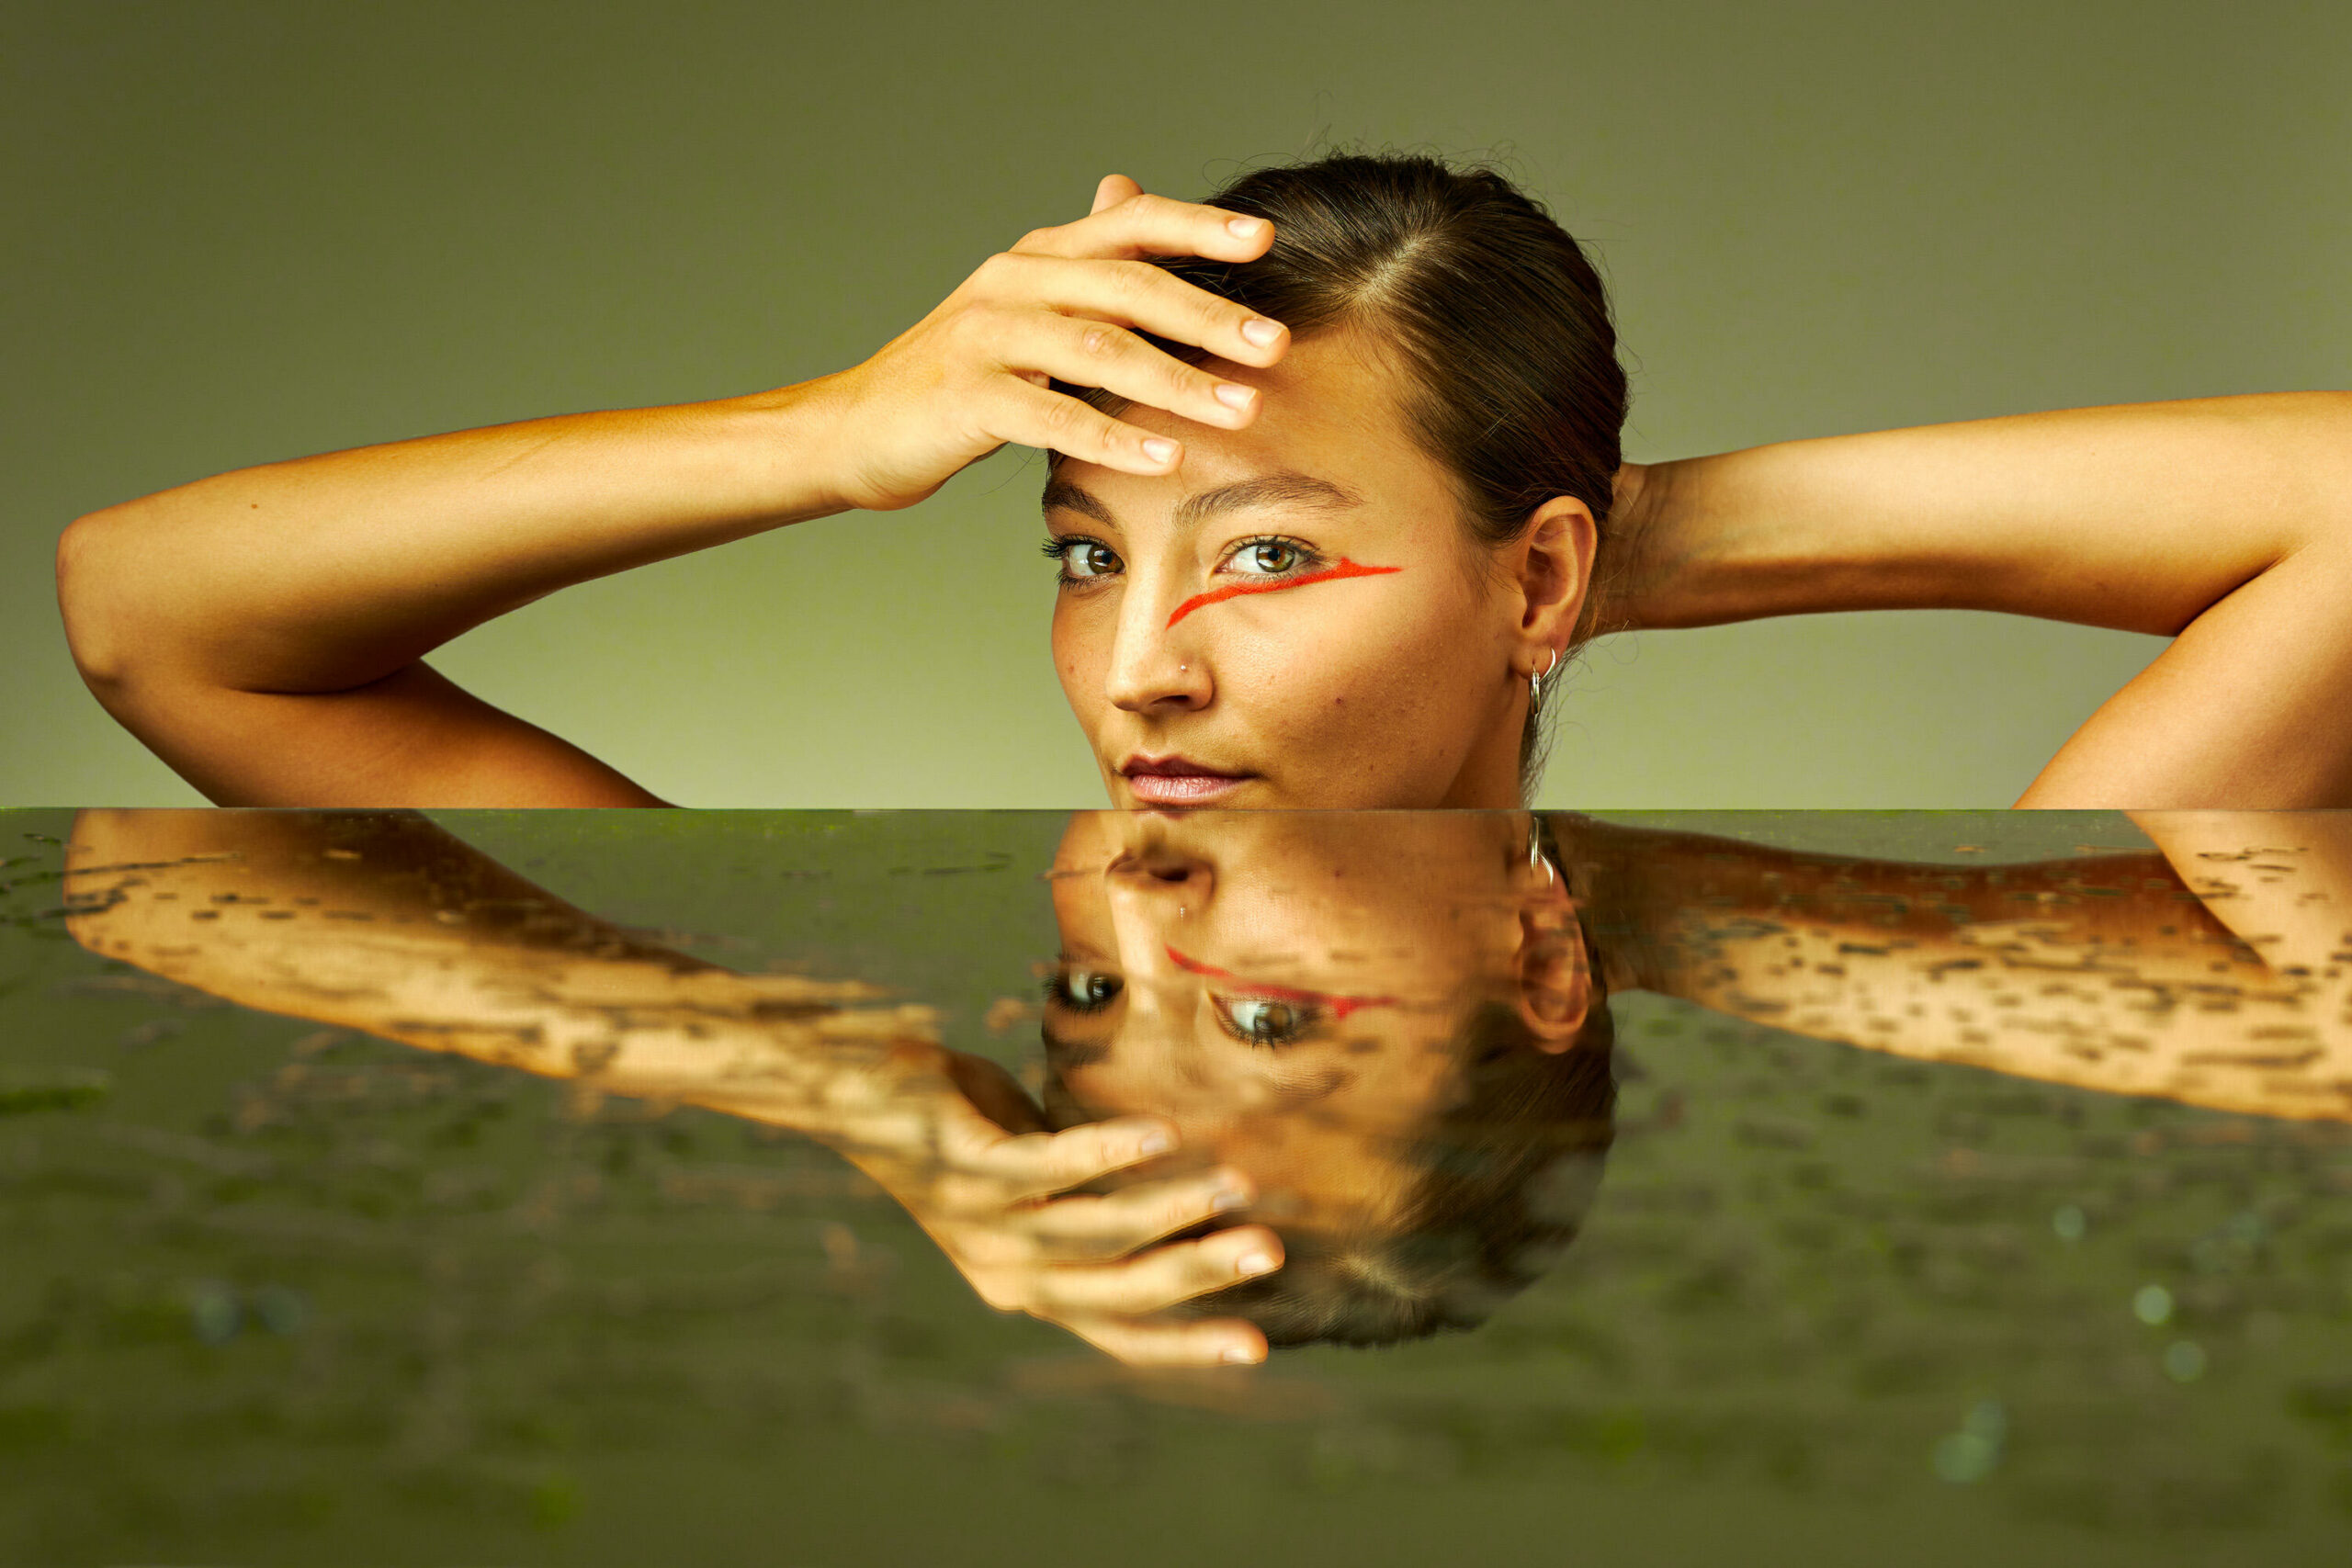 Vrouw met haar armen omhoog en een hand voor het gezicht met daaronder reflecterend water